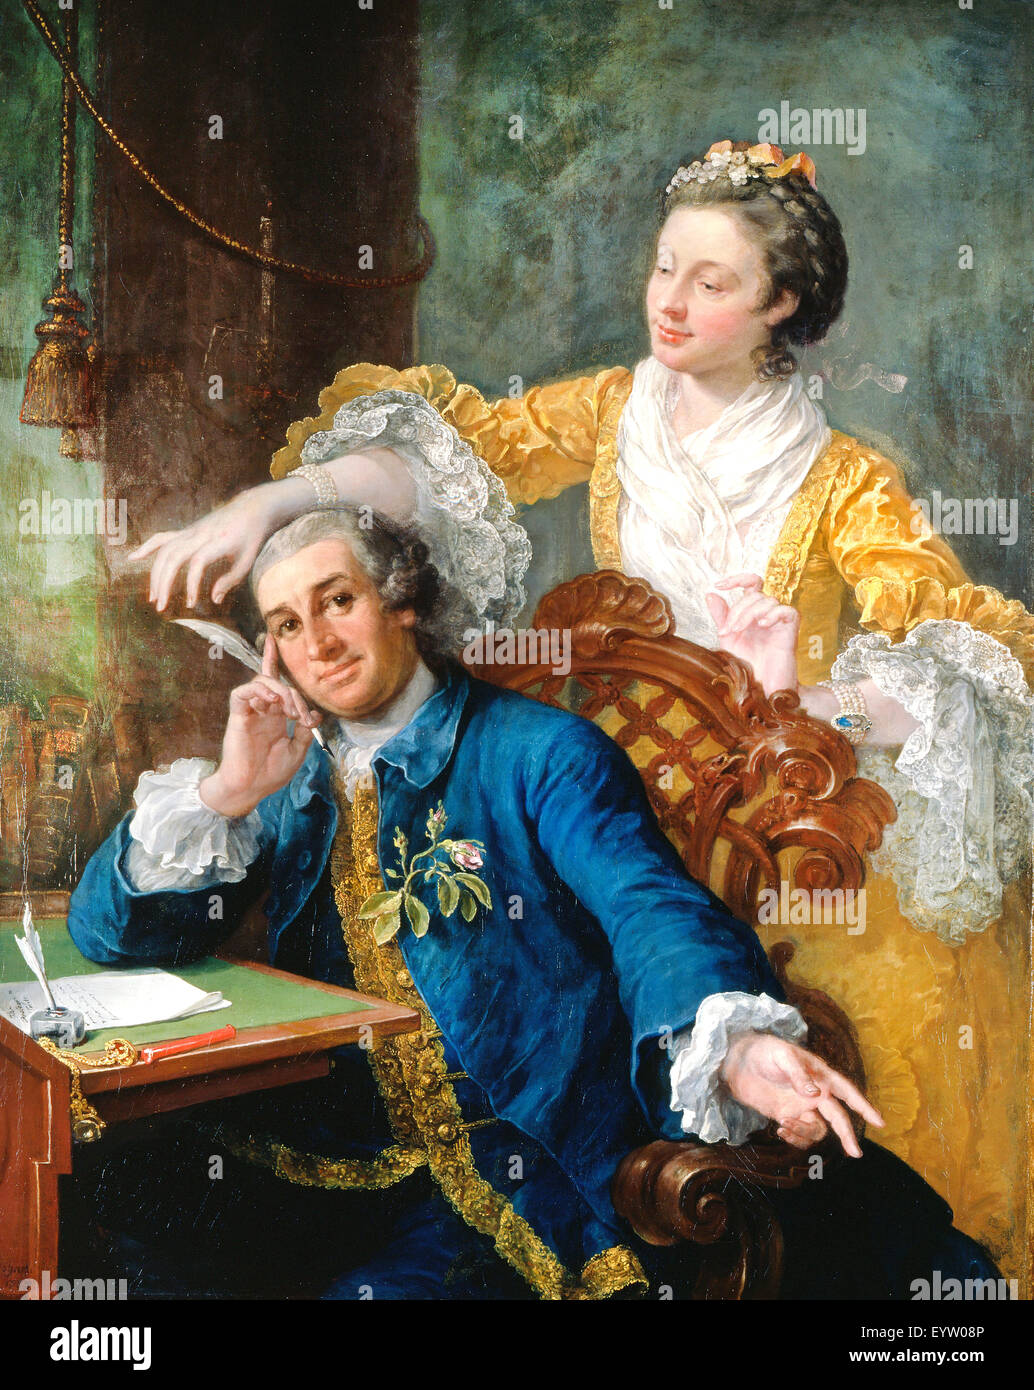 William Hogarth, David Garrick avec son épouse Eva-Maria Veigel, 'La Violette' ou 'Violetti'. 1757-1764 Huile sur toile. Collège royal Banque D'Images